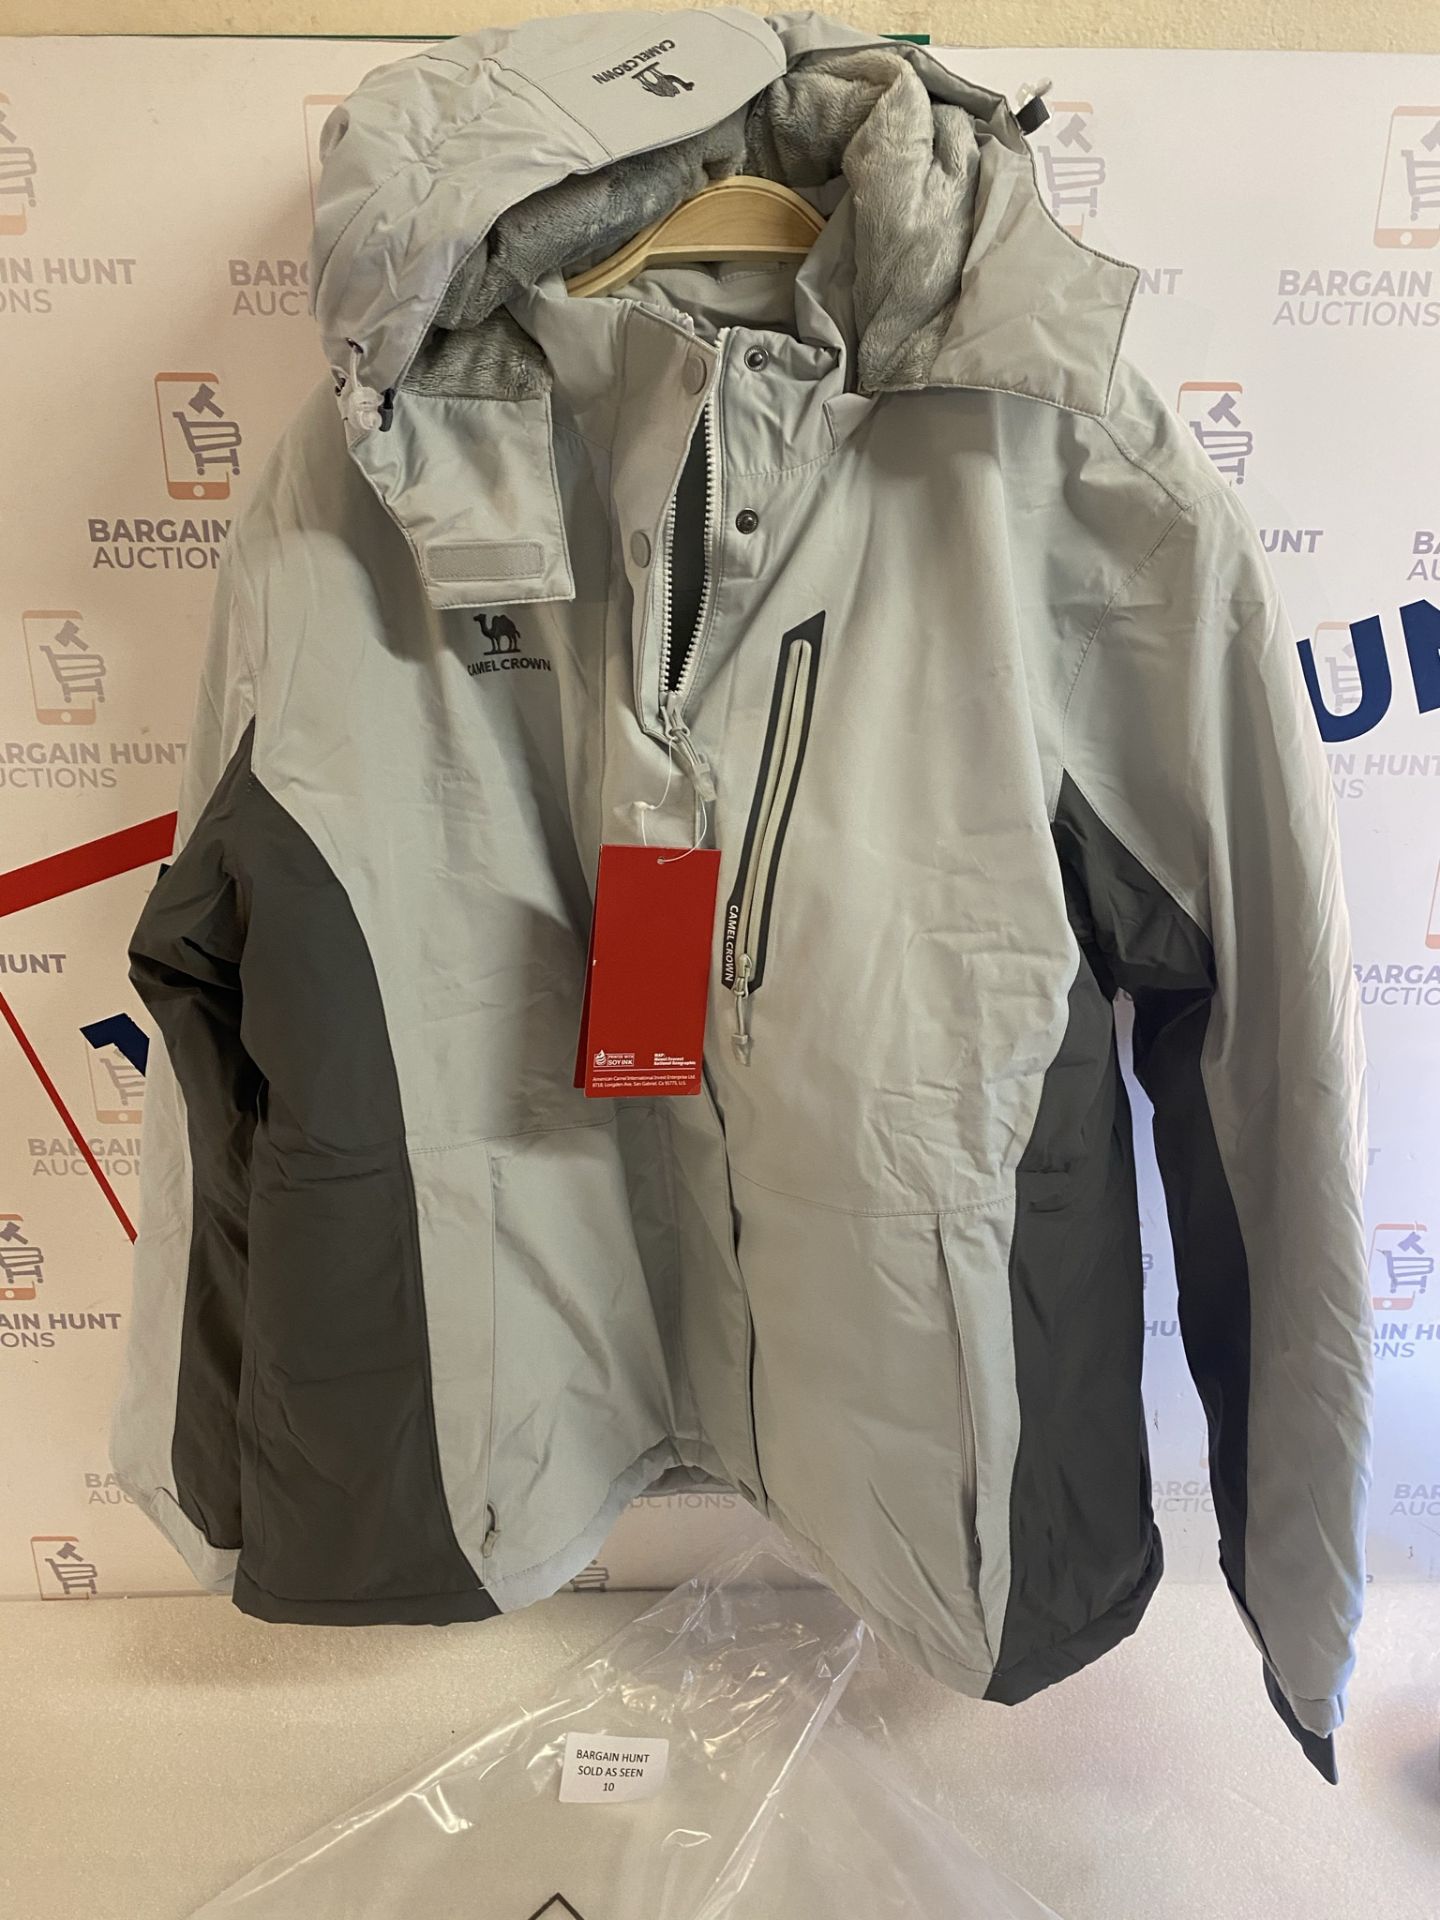 CAMEL CROWN Women's Waterproof Outdoor Jacket, 3XL RRP £59.99 - Image 2 of 2